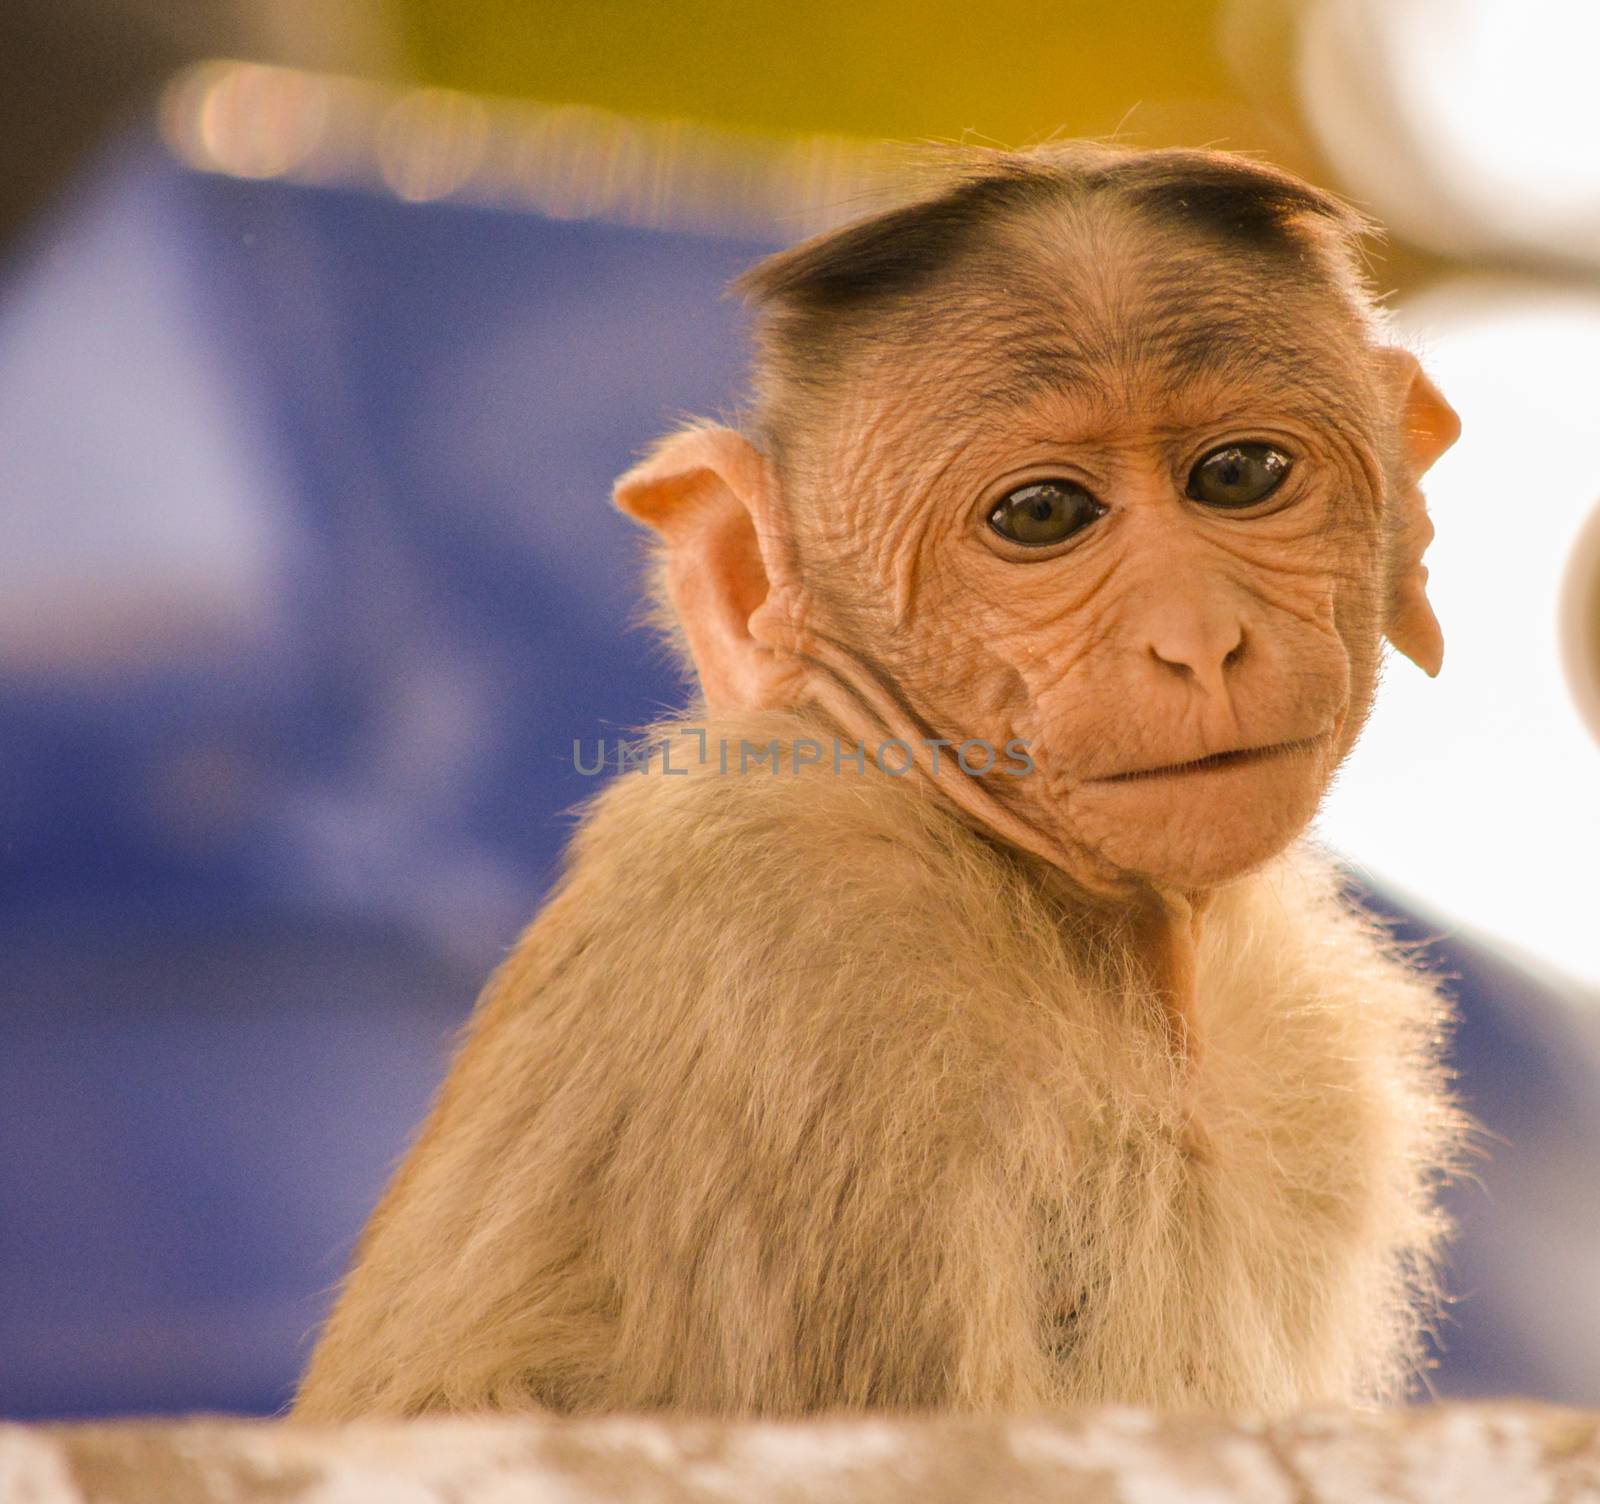 portrait of baby bonnet macaque monkey by lakshmiprasad.maski@gmai.com